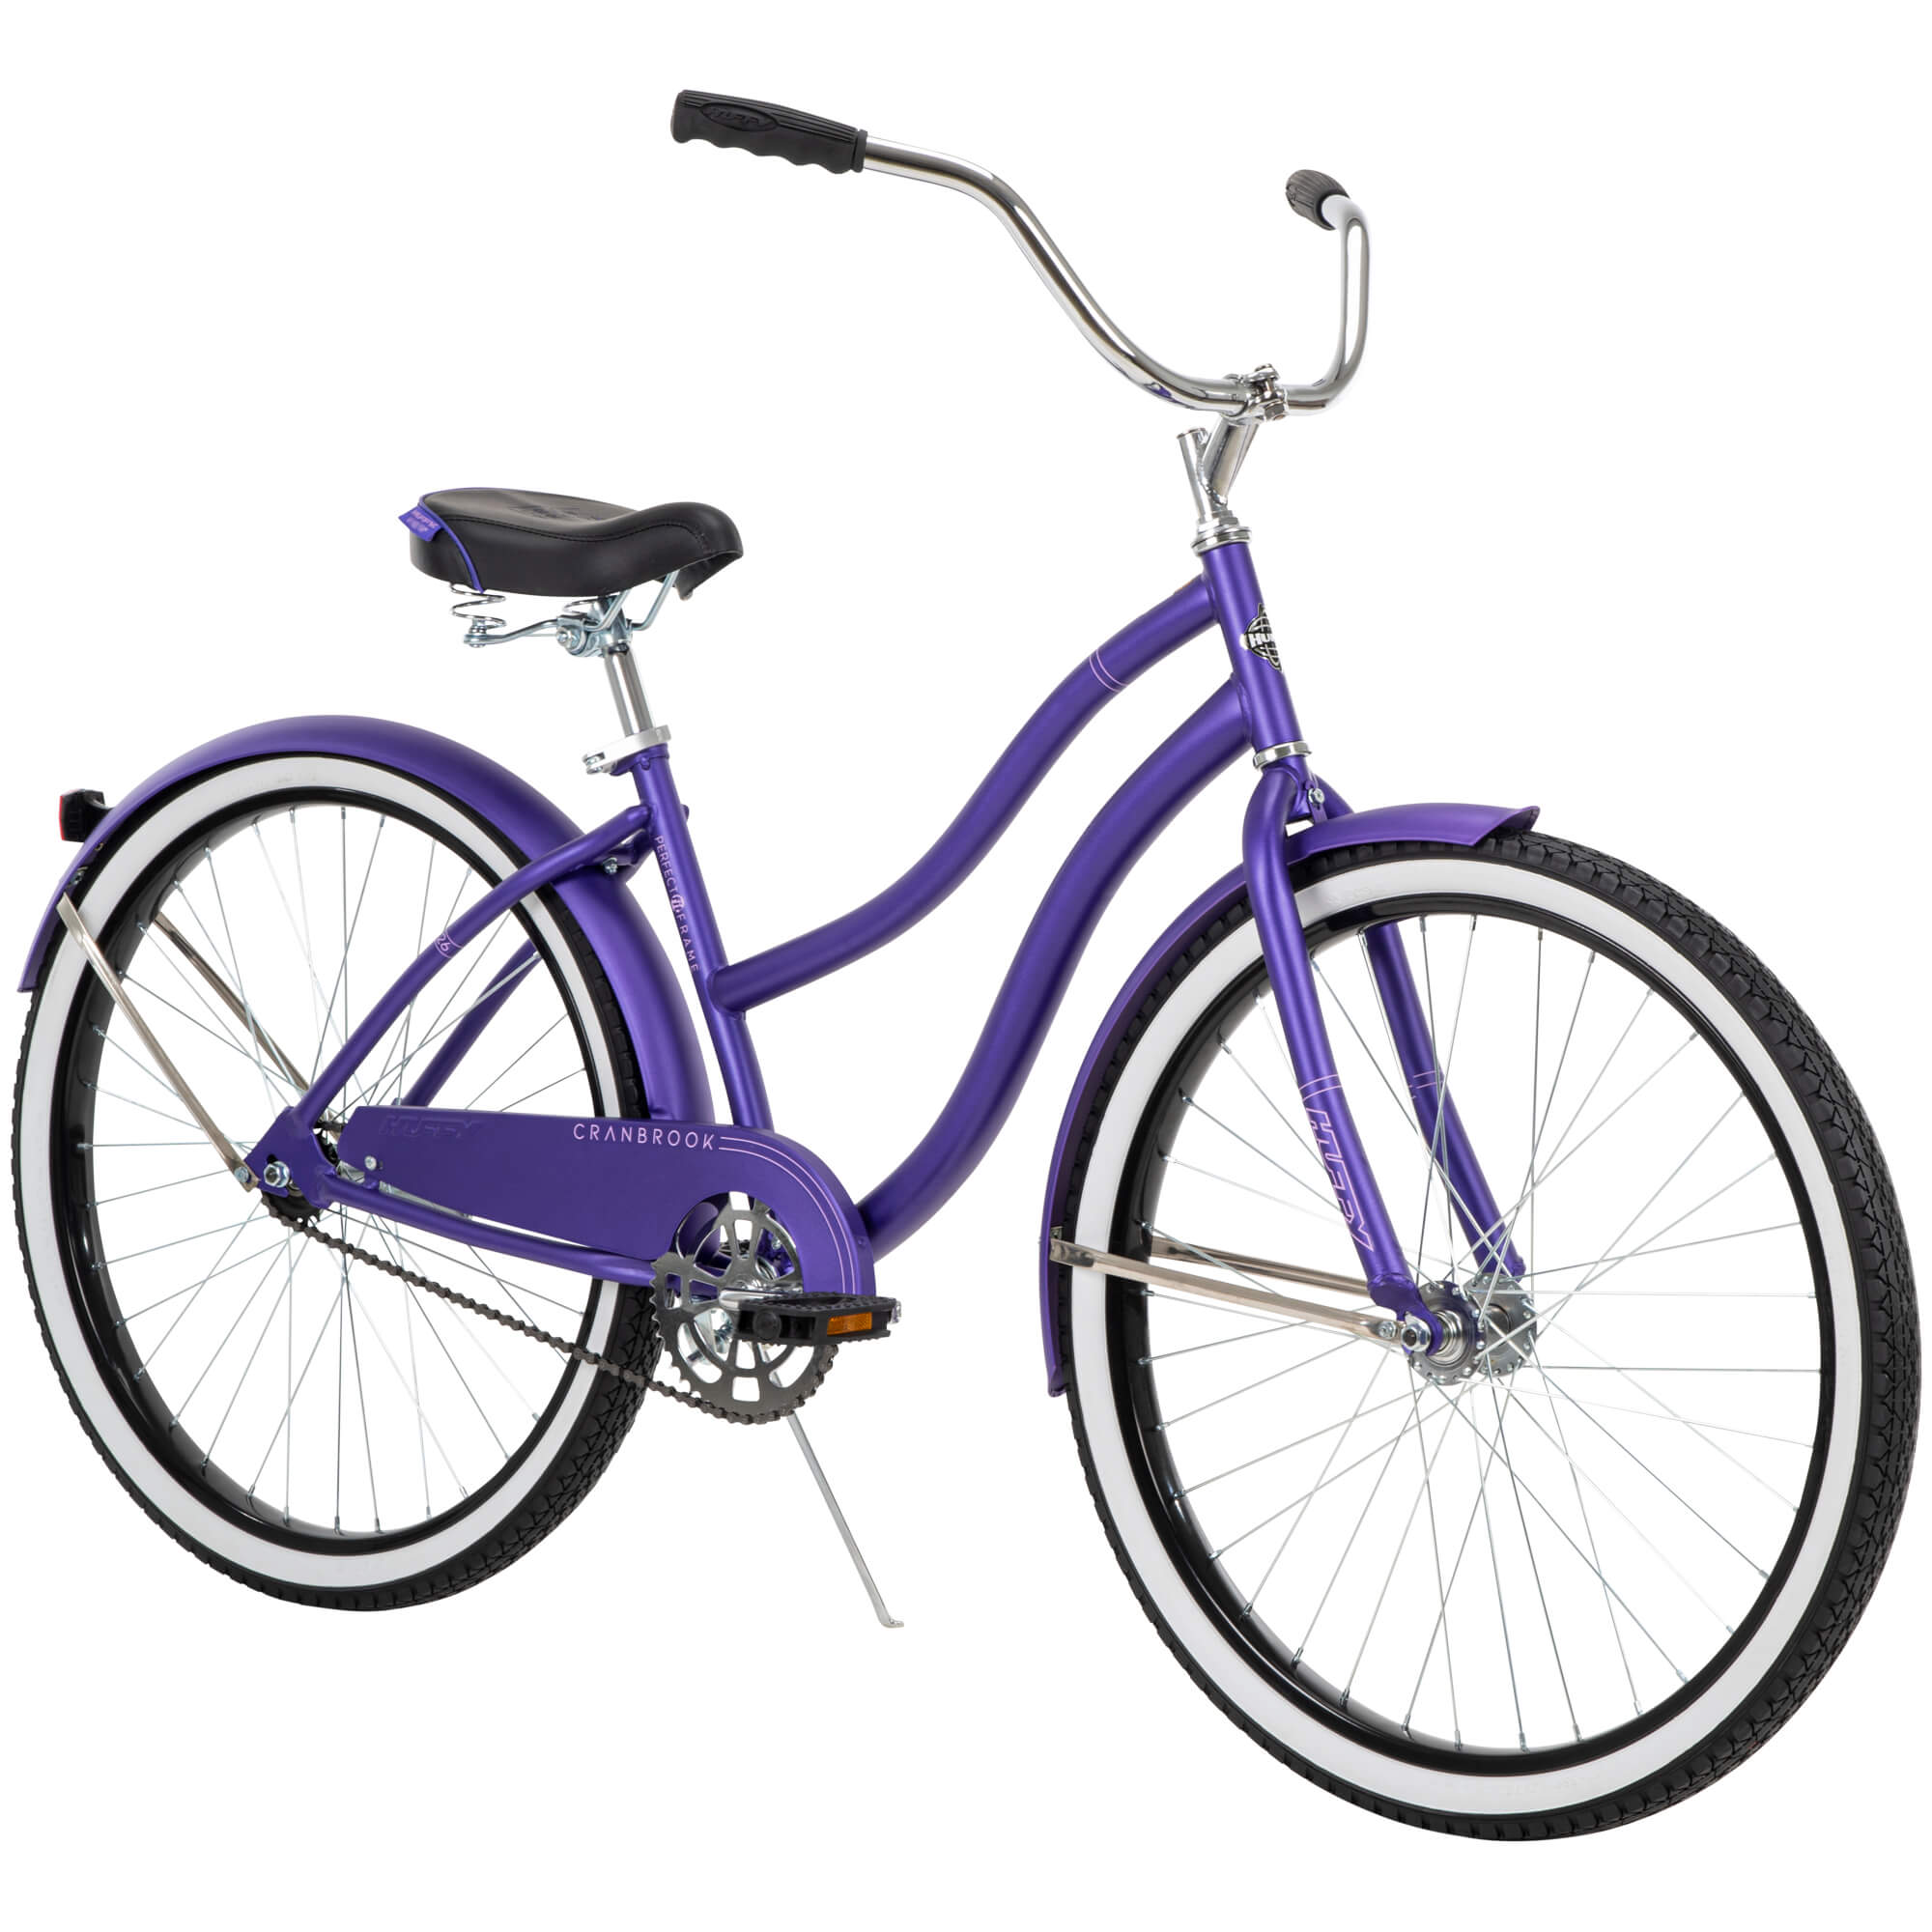 Huffy 26" Cranbrook Women's Beach Cruiser Bike, Purple - image 1 of 8